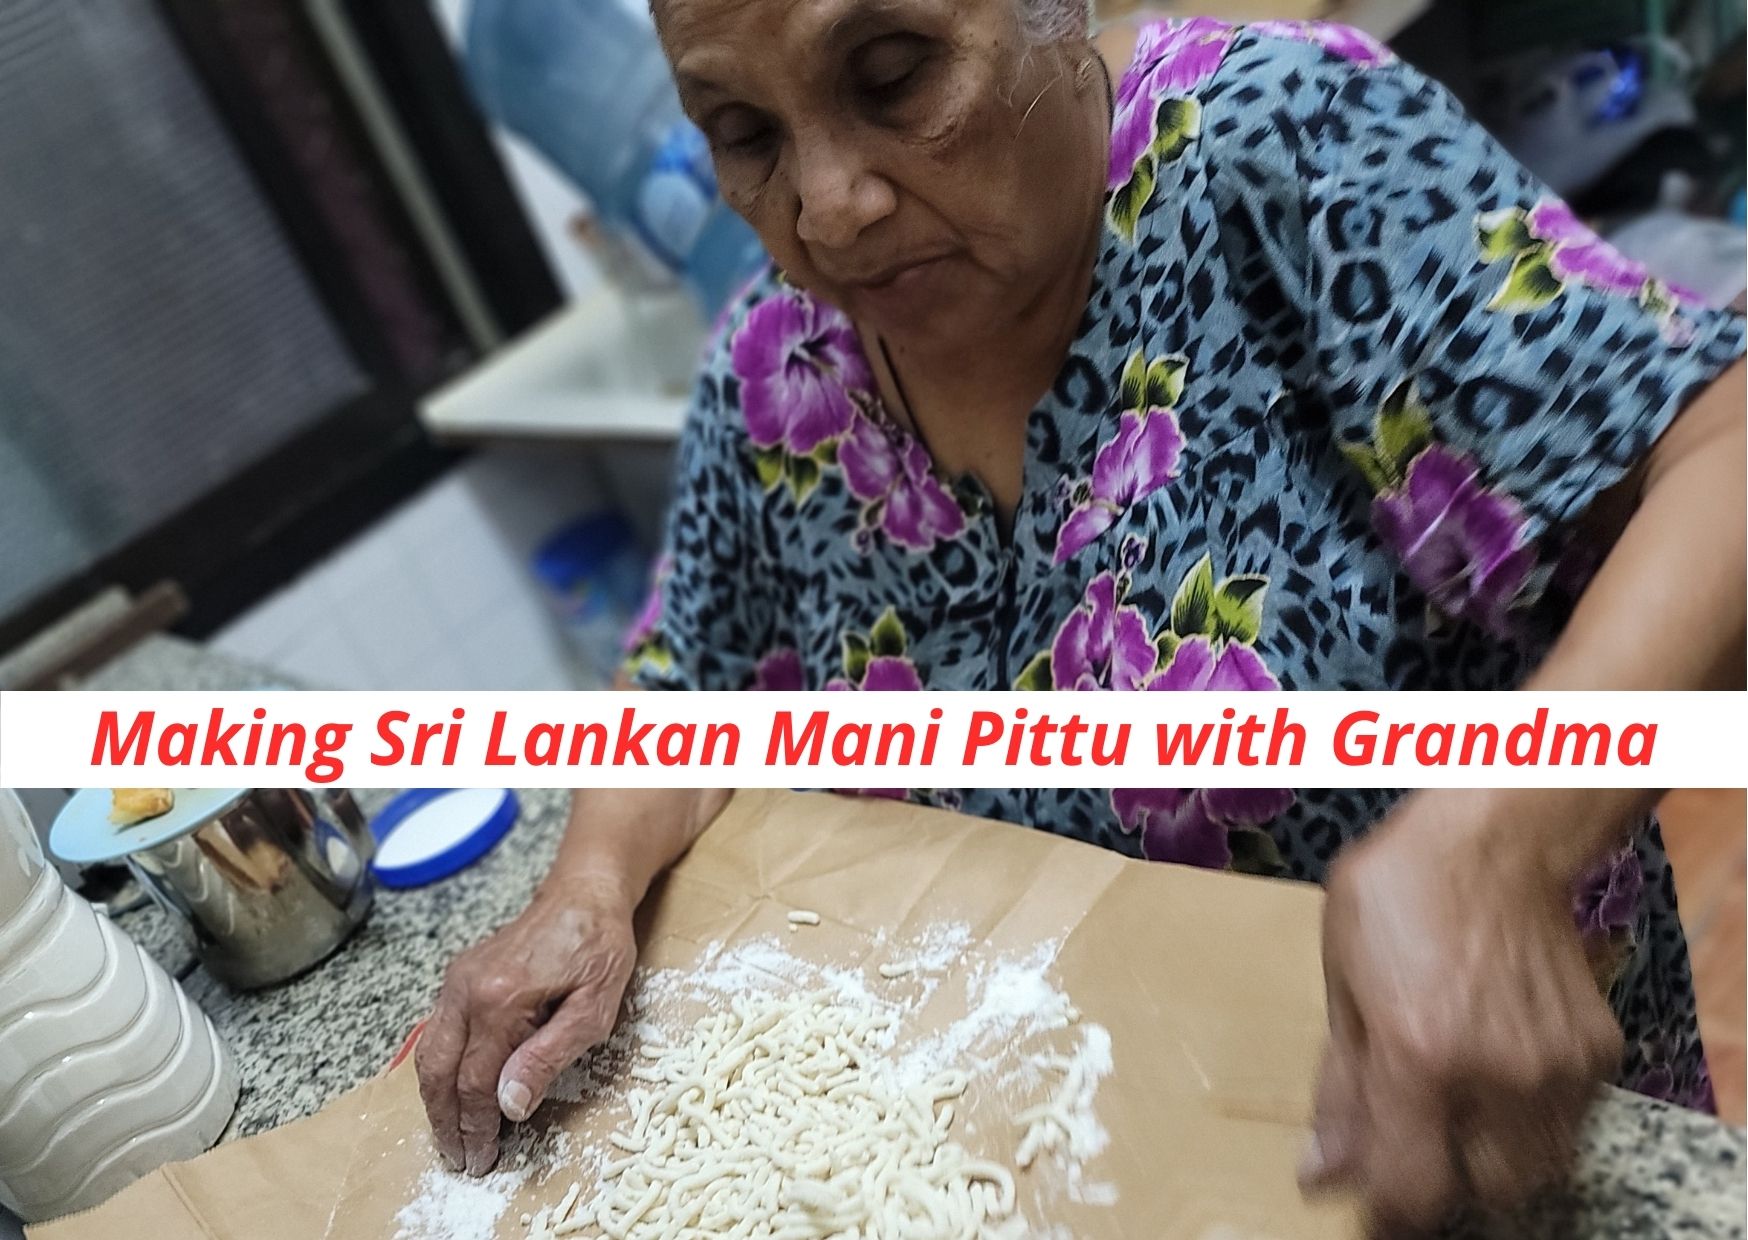 Making Sri Lankan Mani Pittu with Grandma